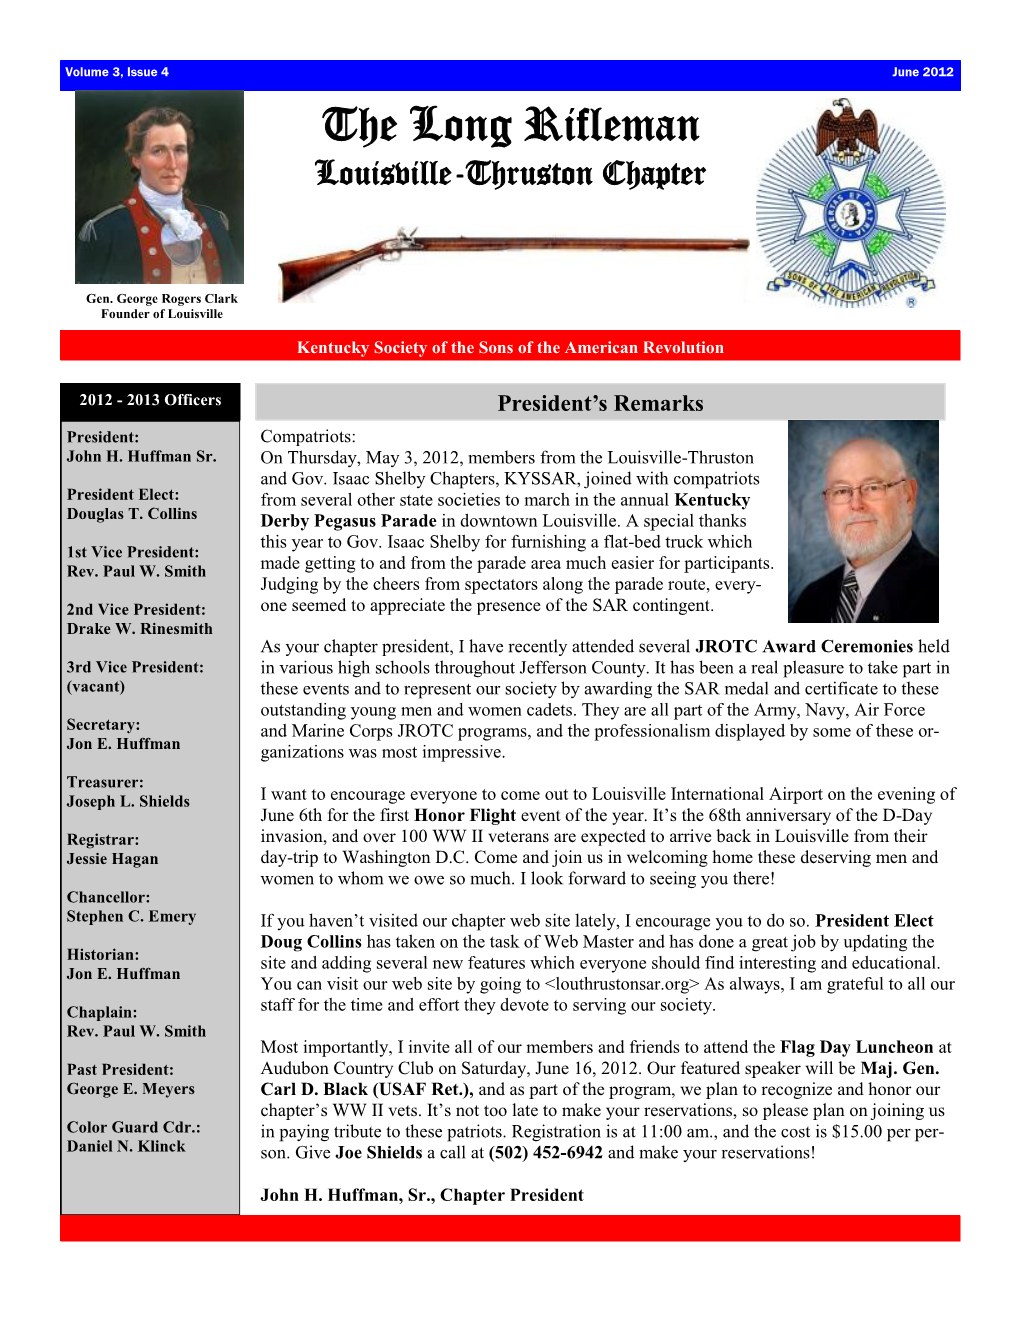 June 2012 Newsletter